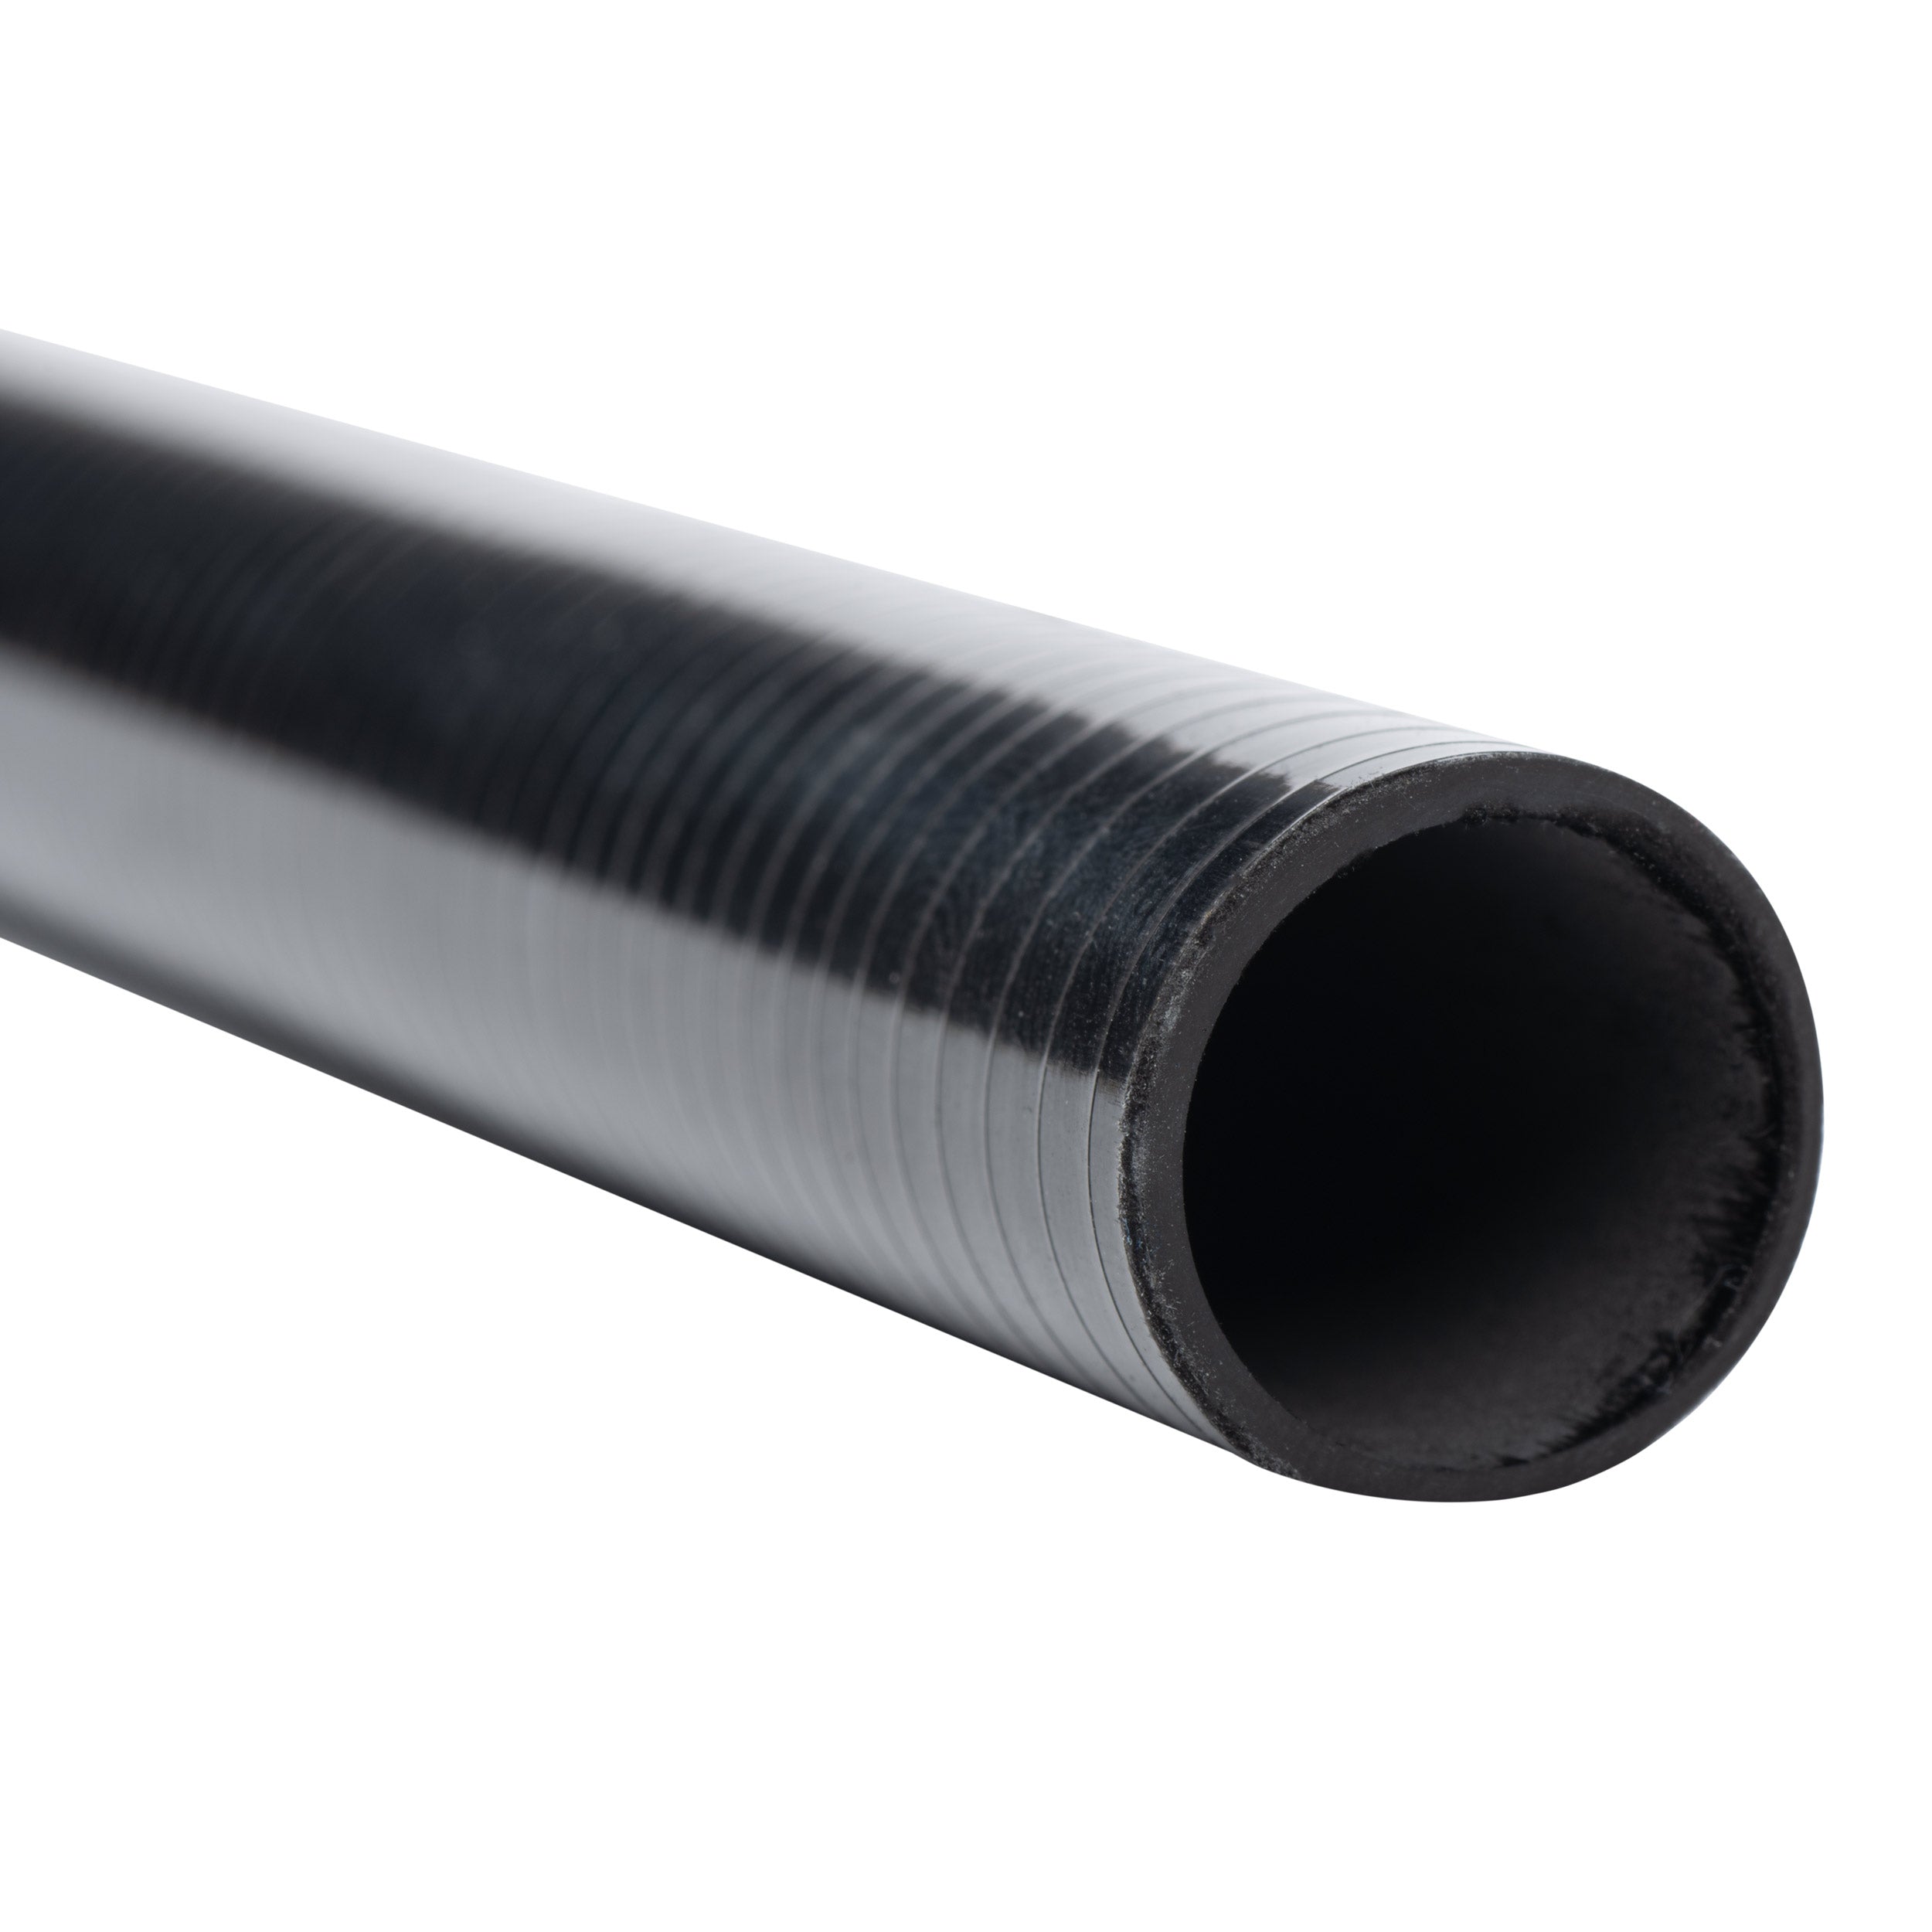 Cashion CR6r Carbon Fiber Flipping Rod Blank - CR6r-iFG904